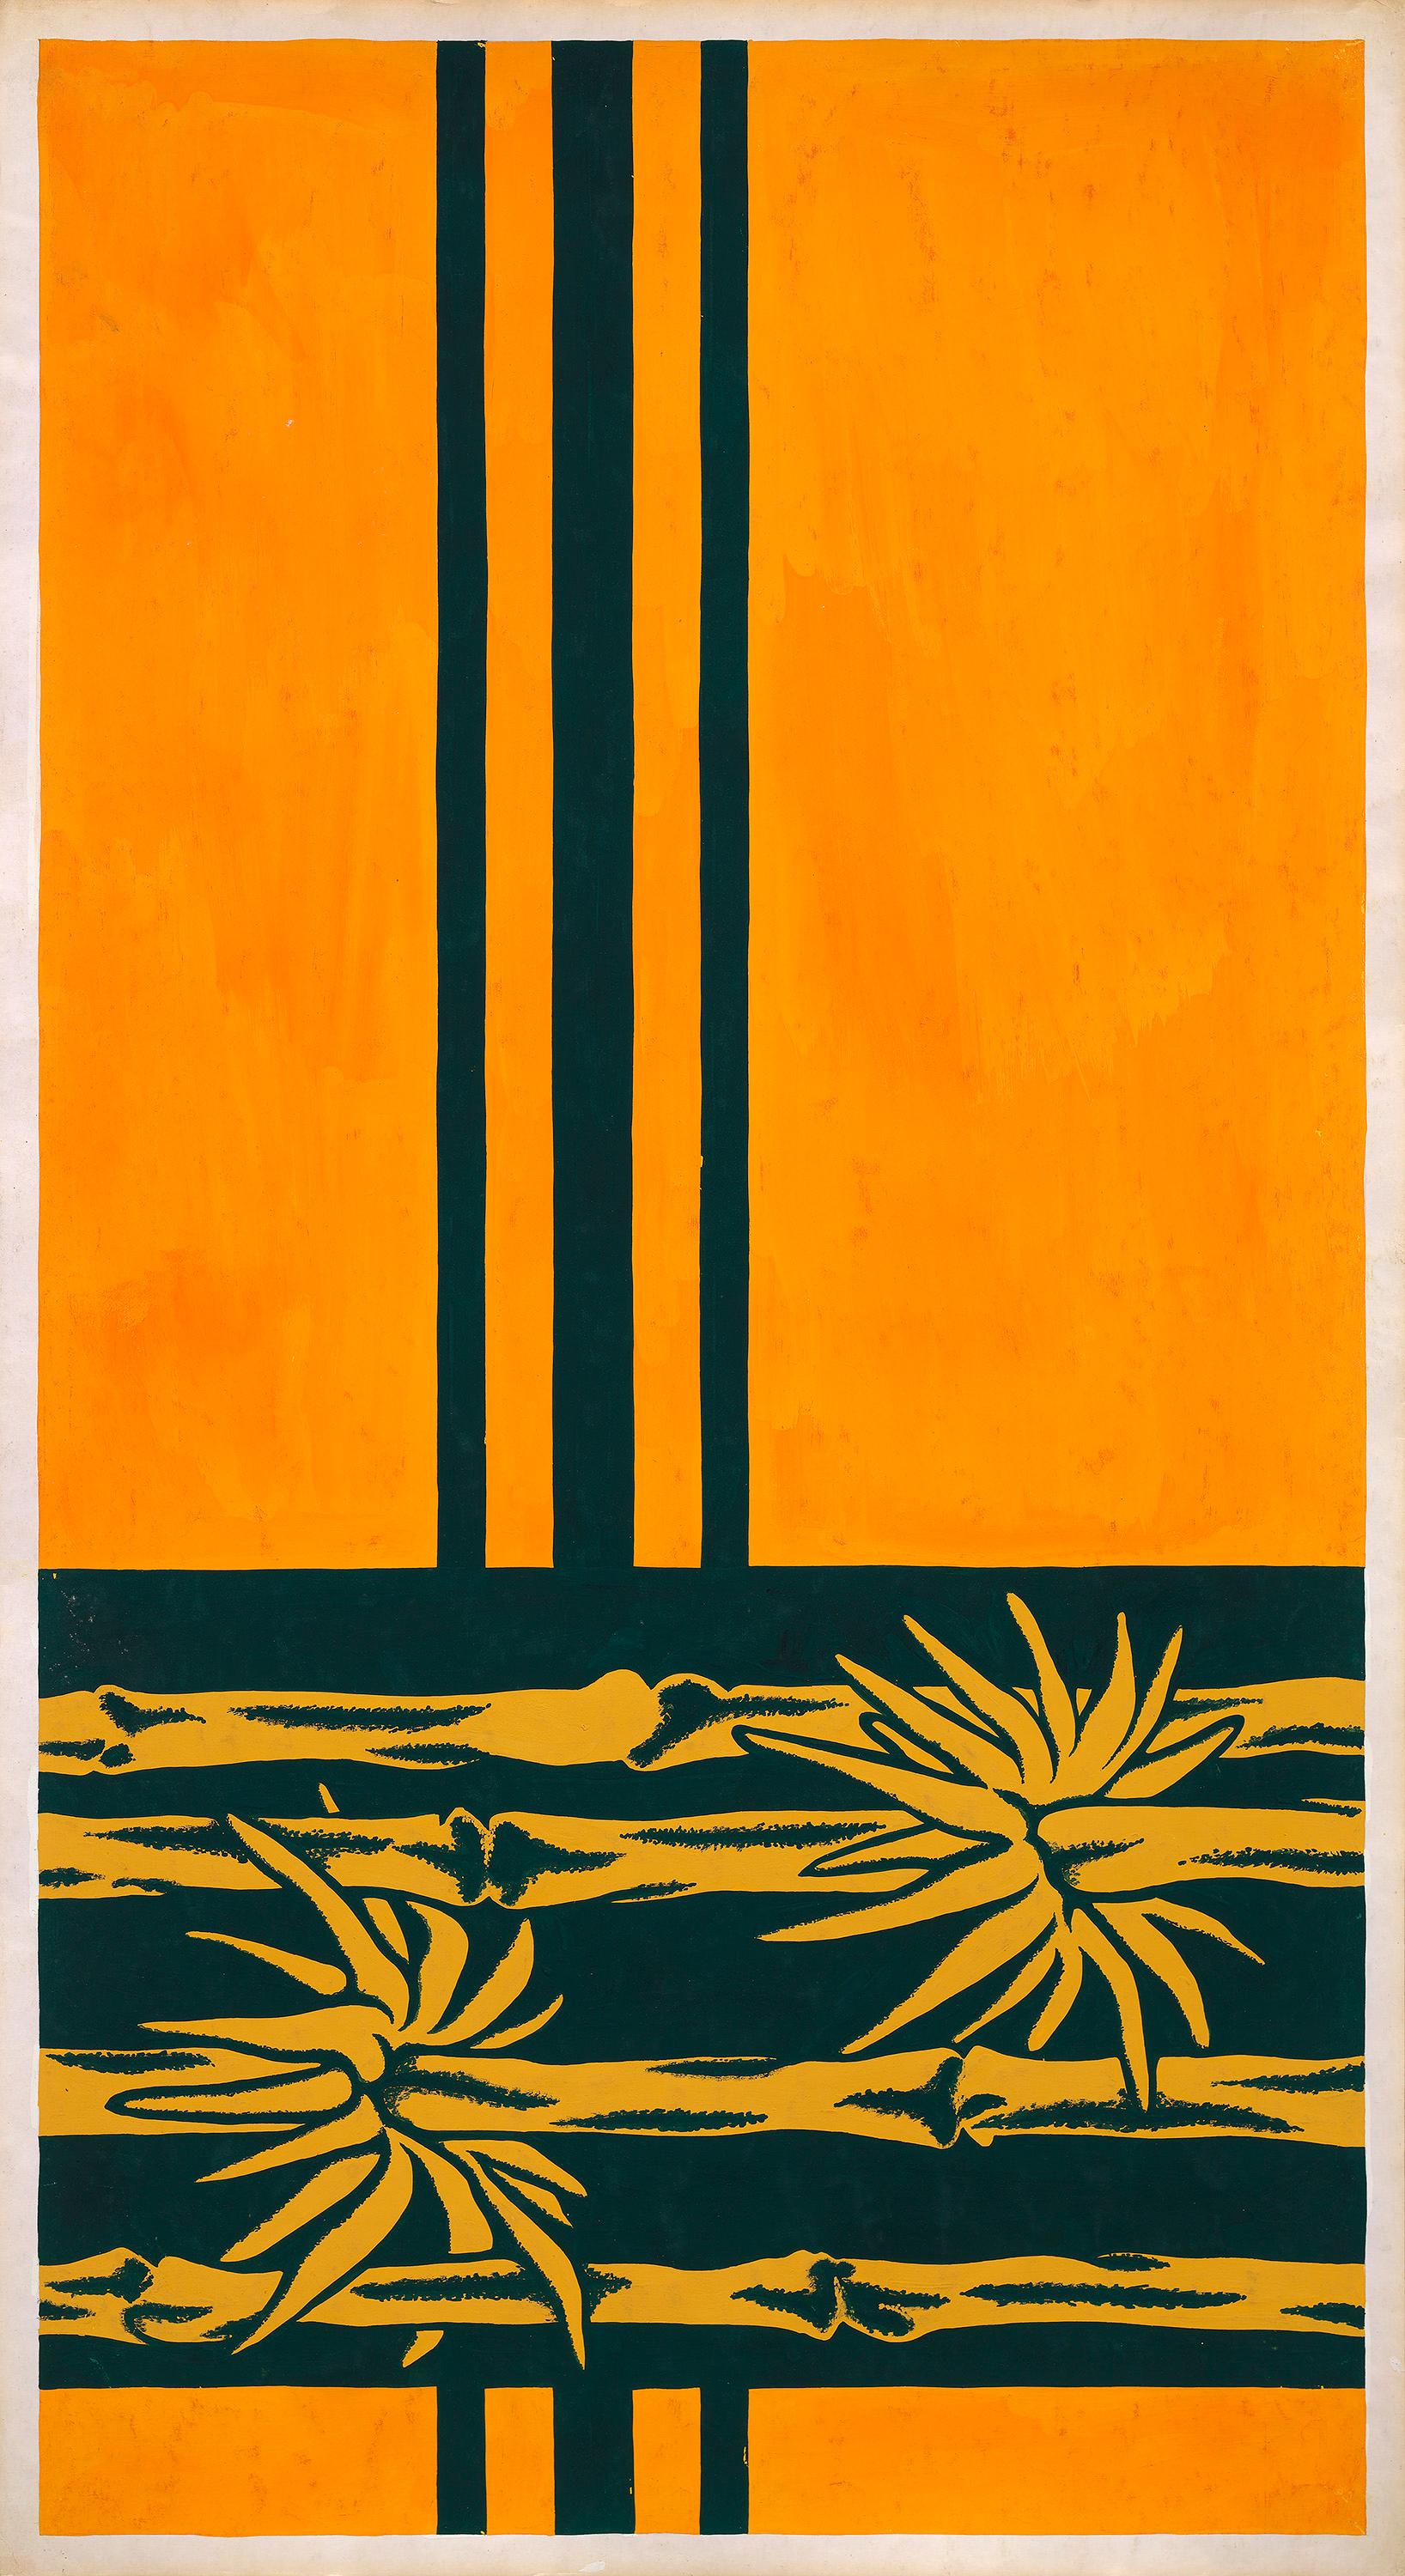 Conception textile originale des années 70 peinte à la main à la gouache, couleur orange et verte sur papier